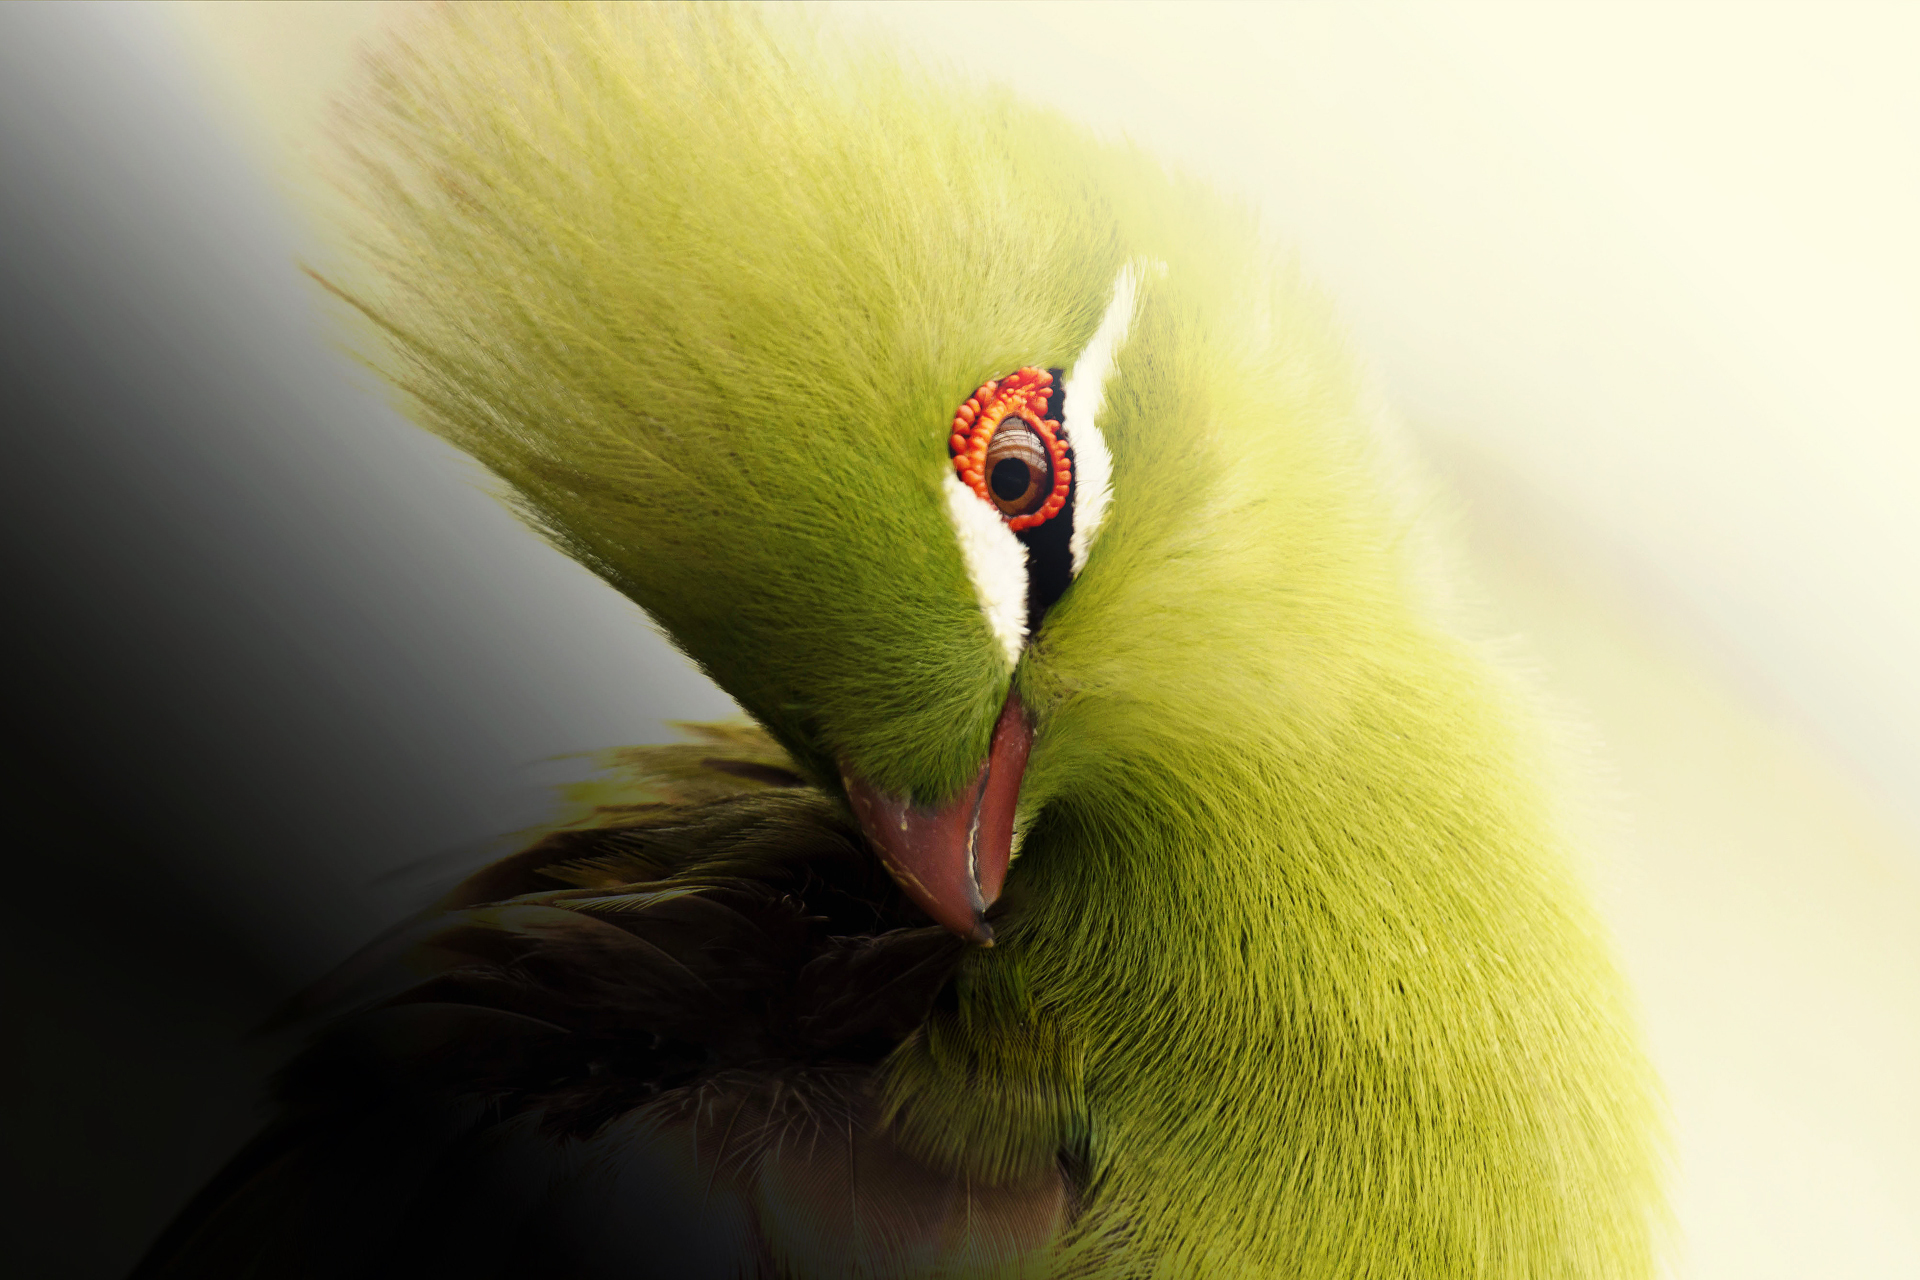 best bird wallpaper,green,yellow,close up,macro photography,bird